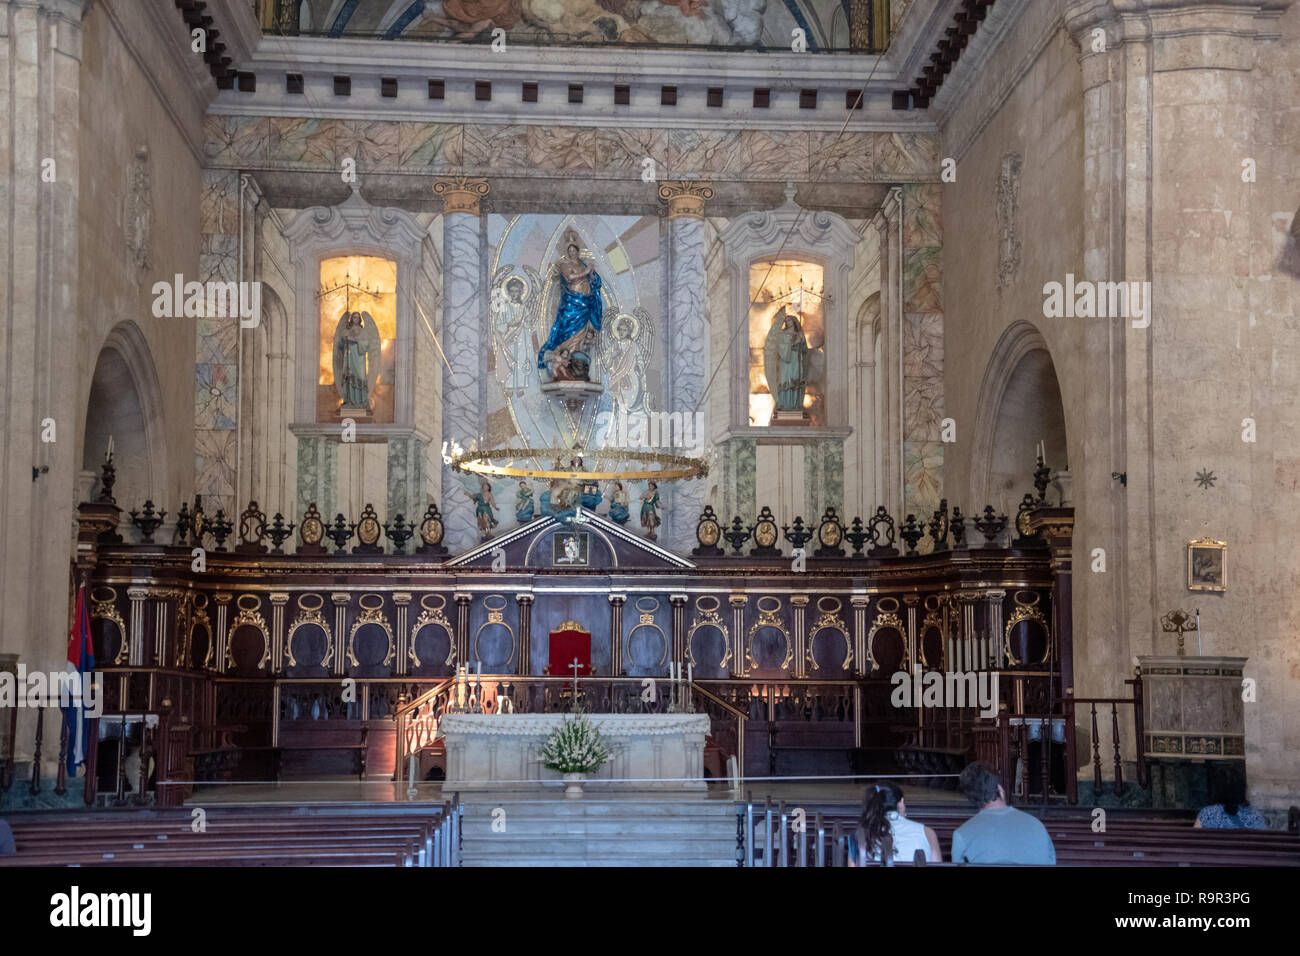 Interior of the Havana Cathedral (Cathedral de San Cristobal) in Plaza de la Catedral on Calle Empedrado in Havana, Cuba. Stock Photo